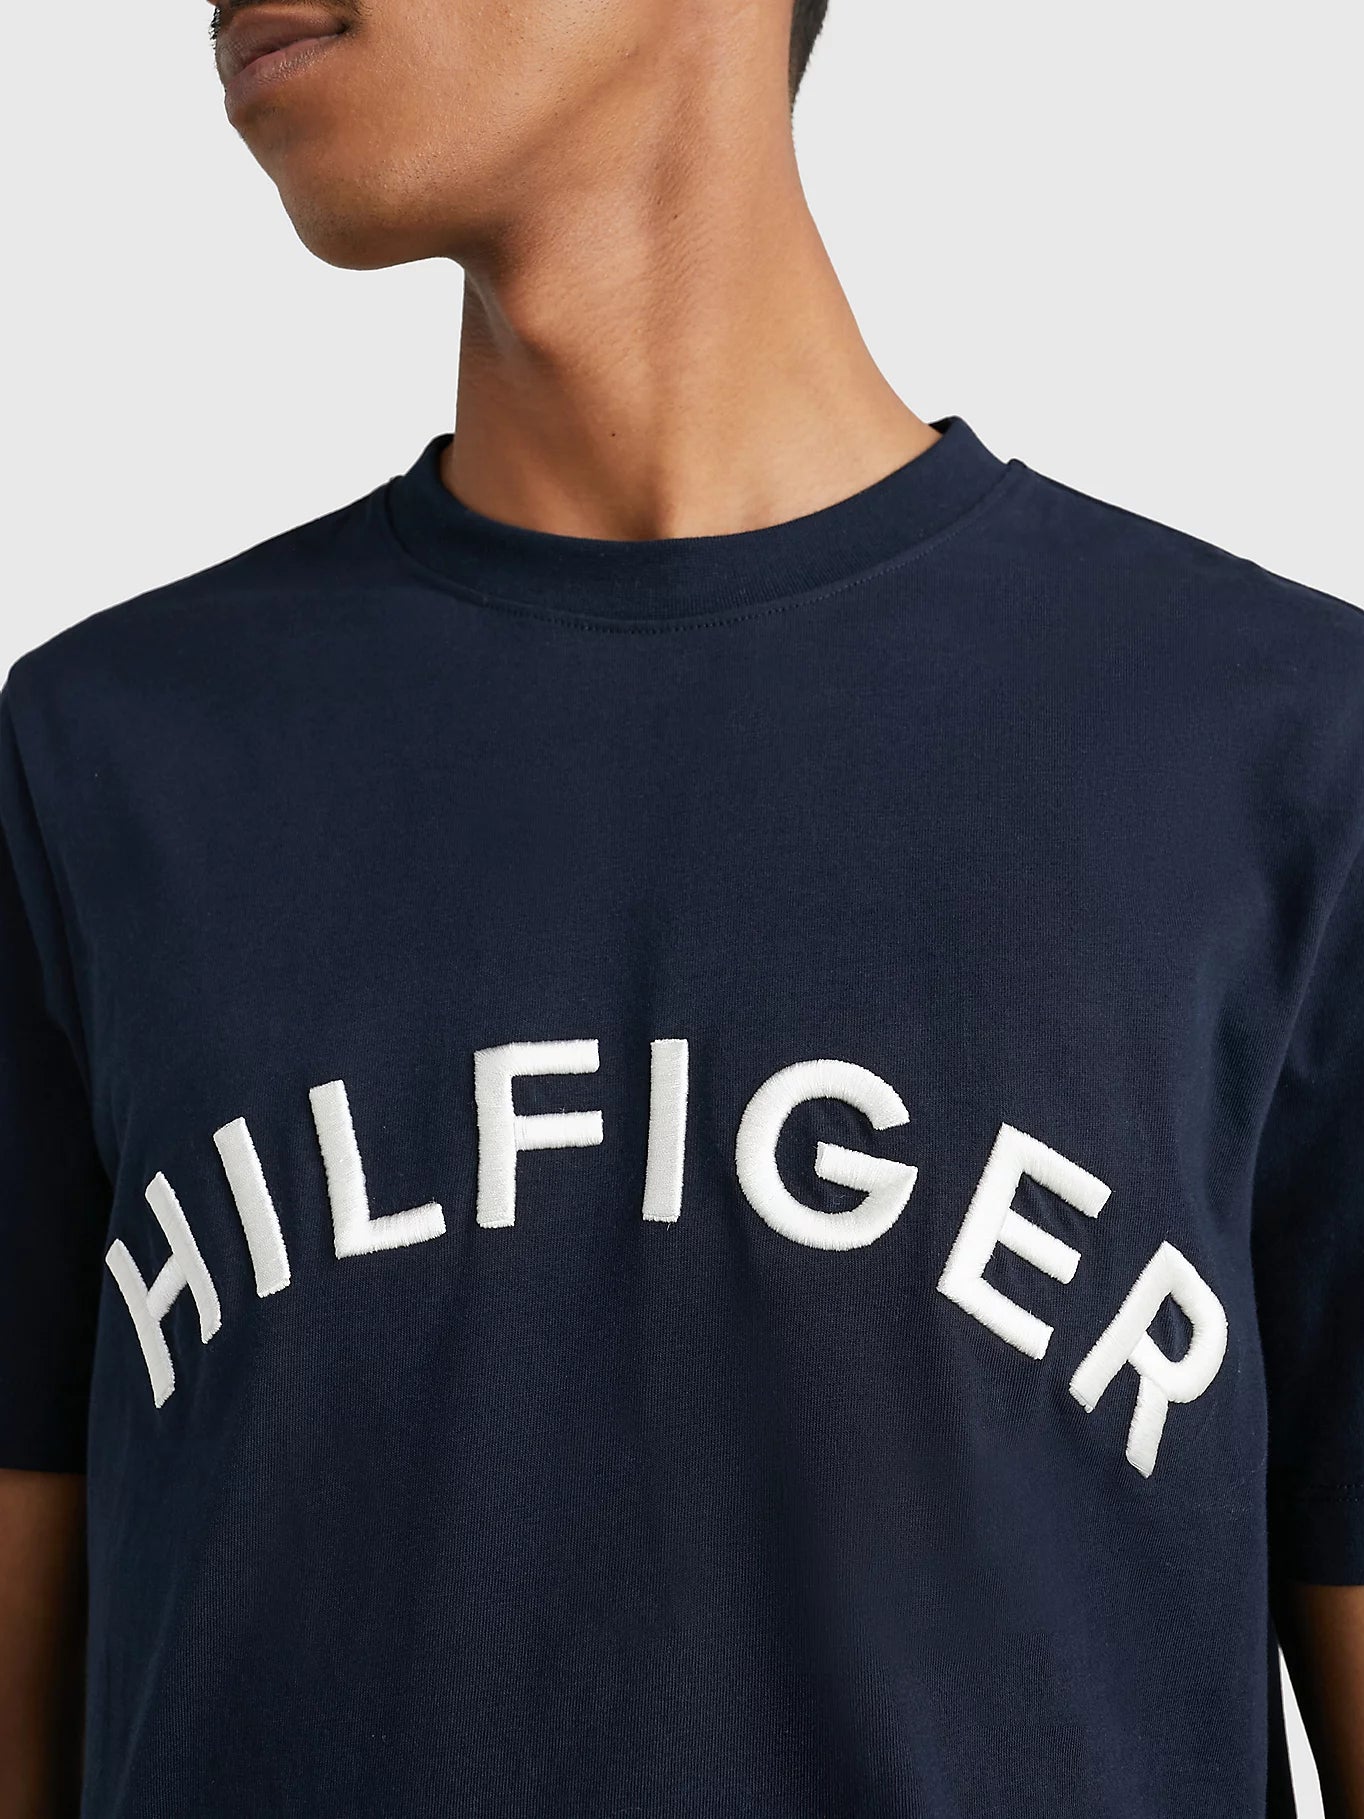 T-Shirt Tommy Hilfiger marine en coton bio pour homme I Georgespaul